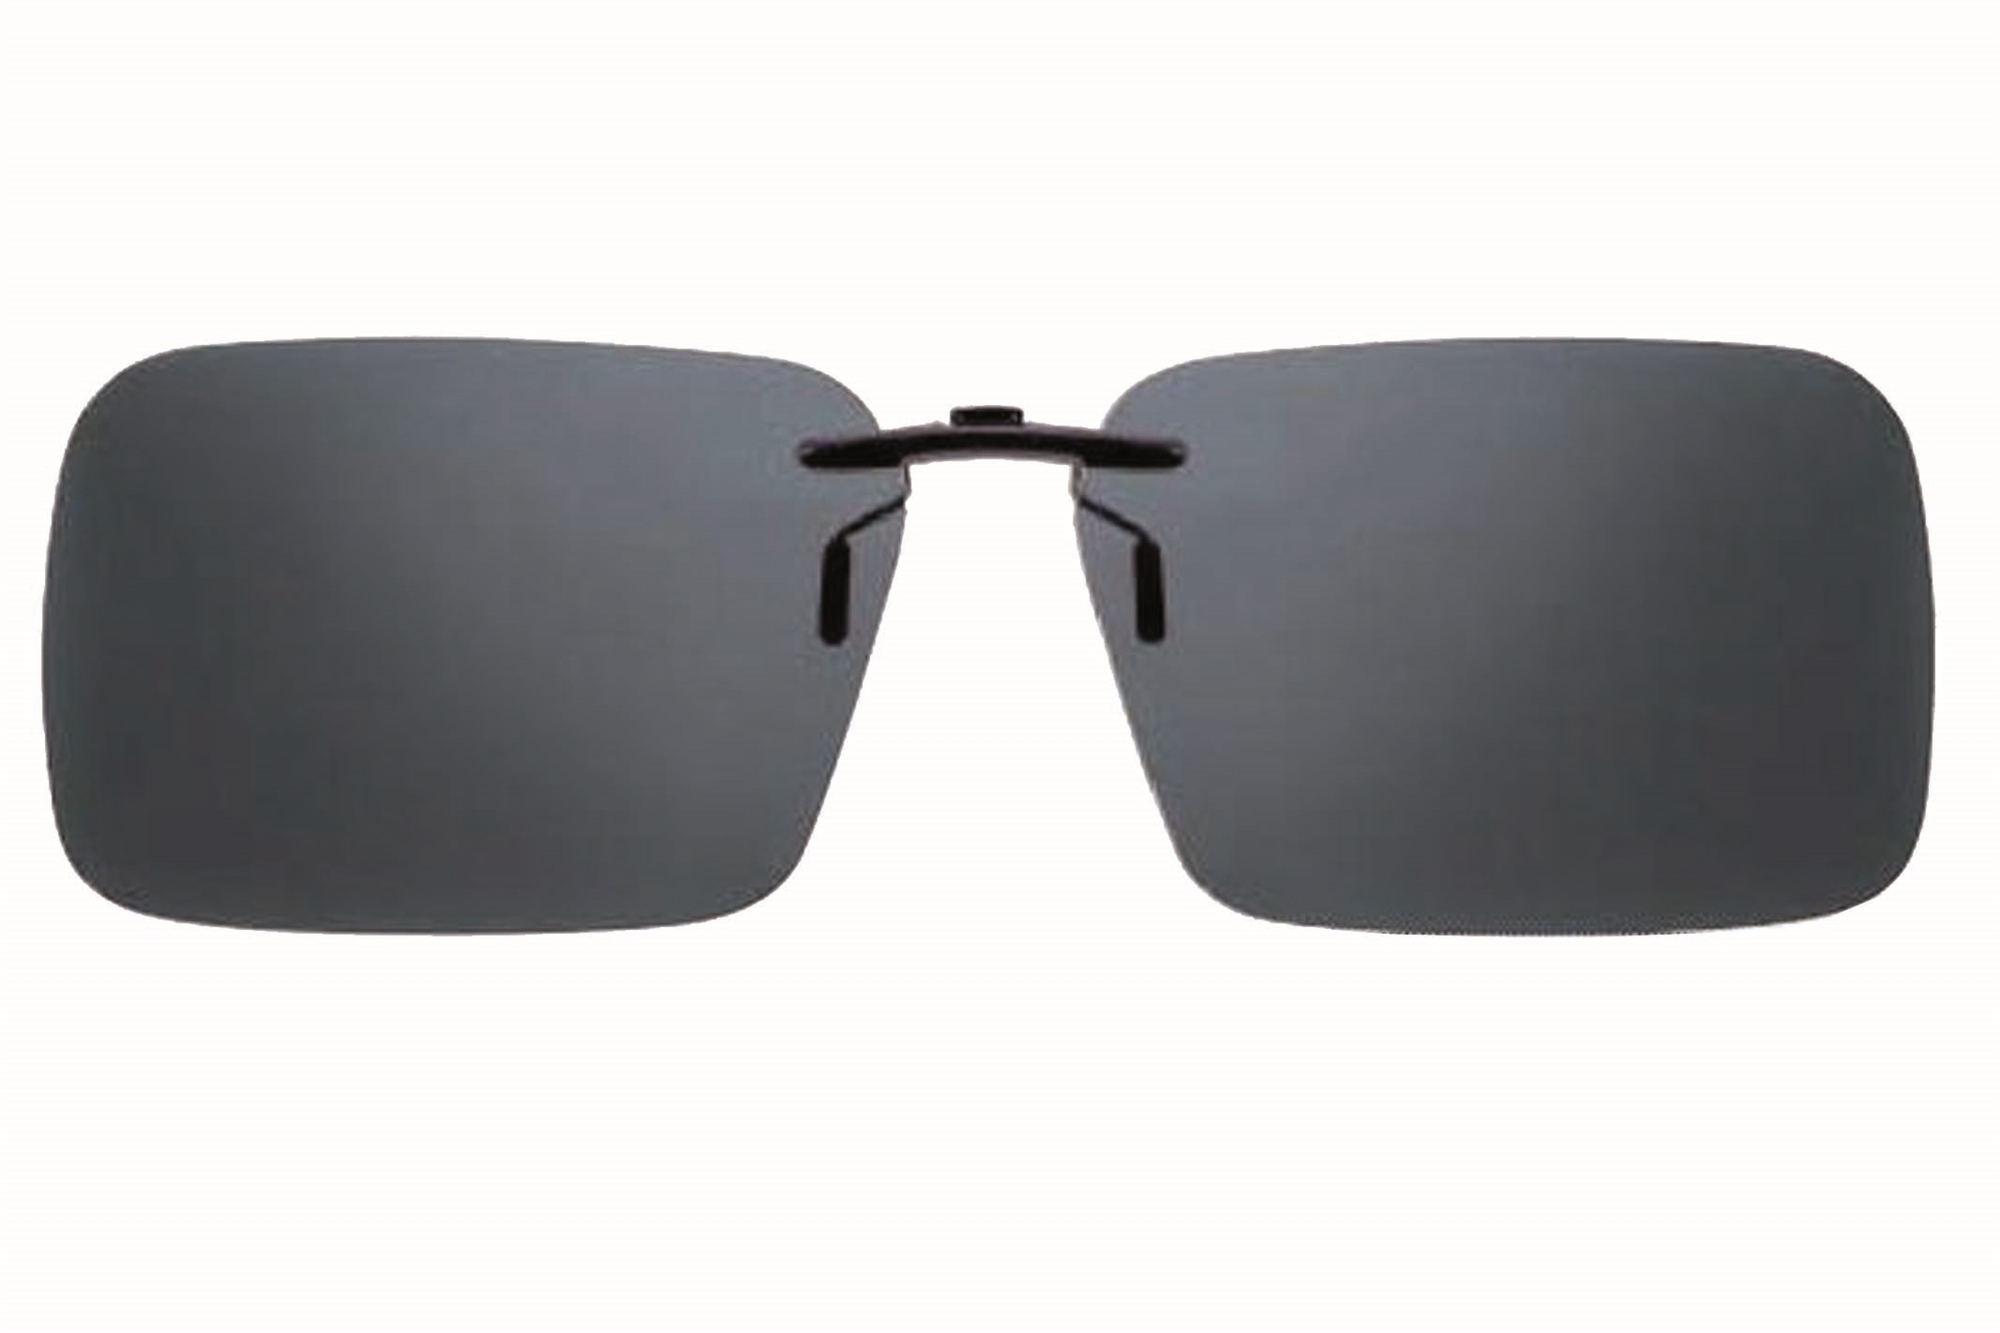 Ønske kage Tag et bad Solbrille - Vippe funktion - Polariserede solbriller - Blødt etui